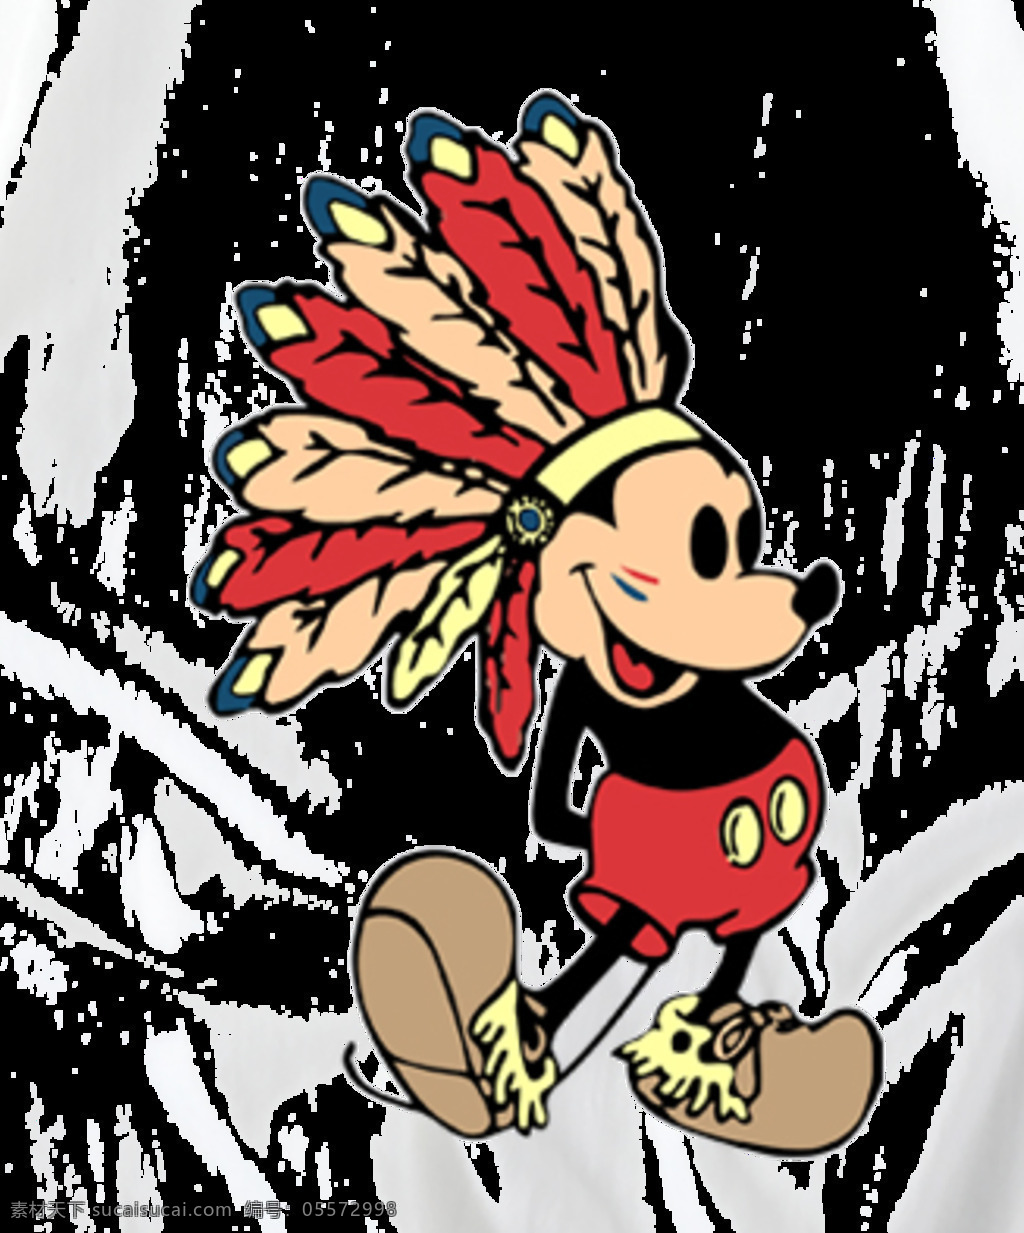 印第安米老鼠 米老鼠 卡通 背景 插画 儿童